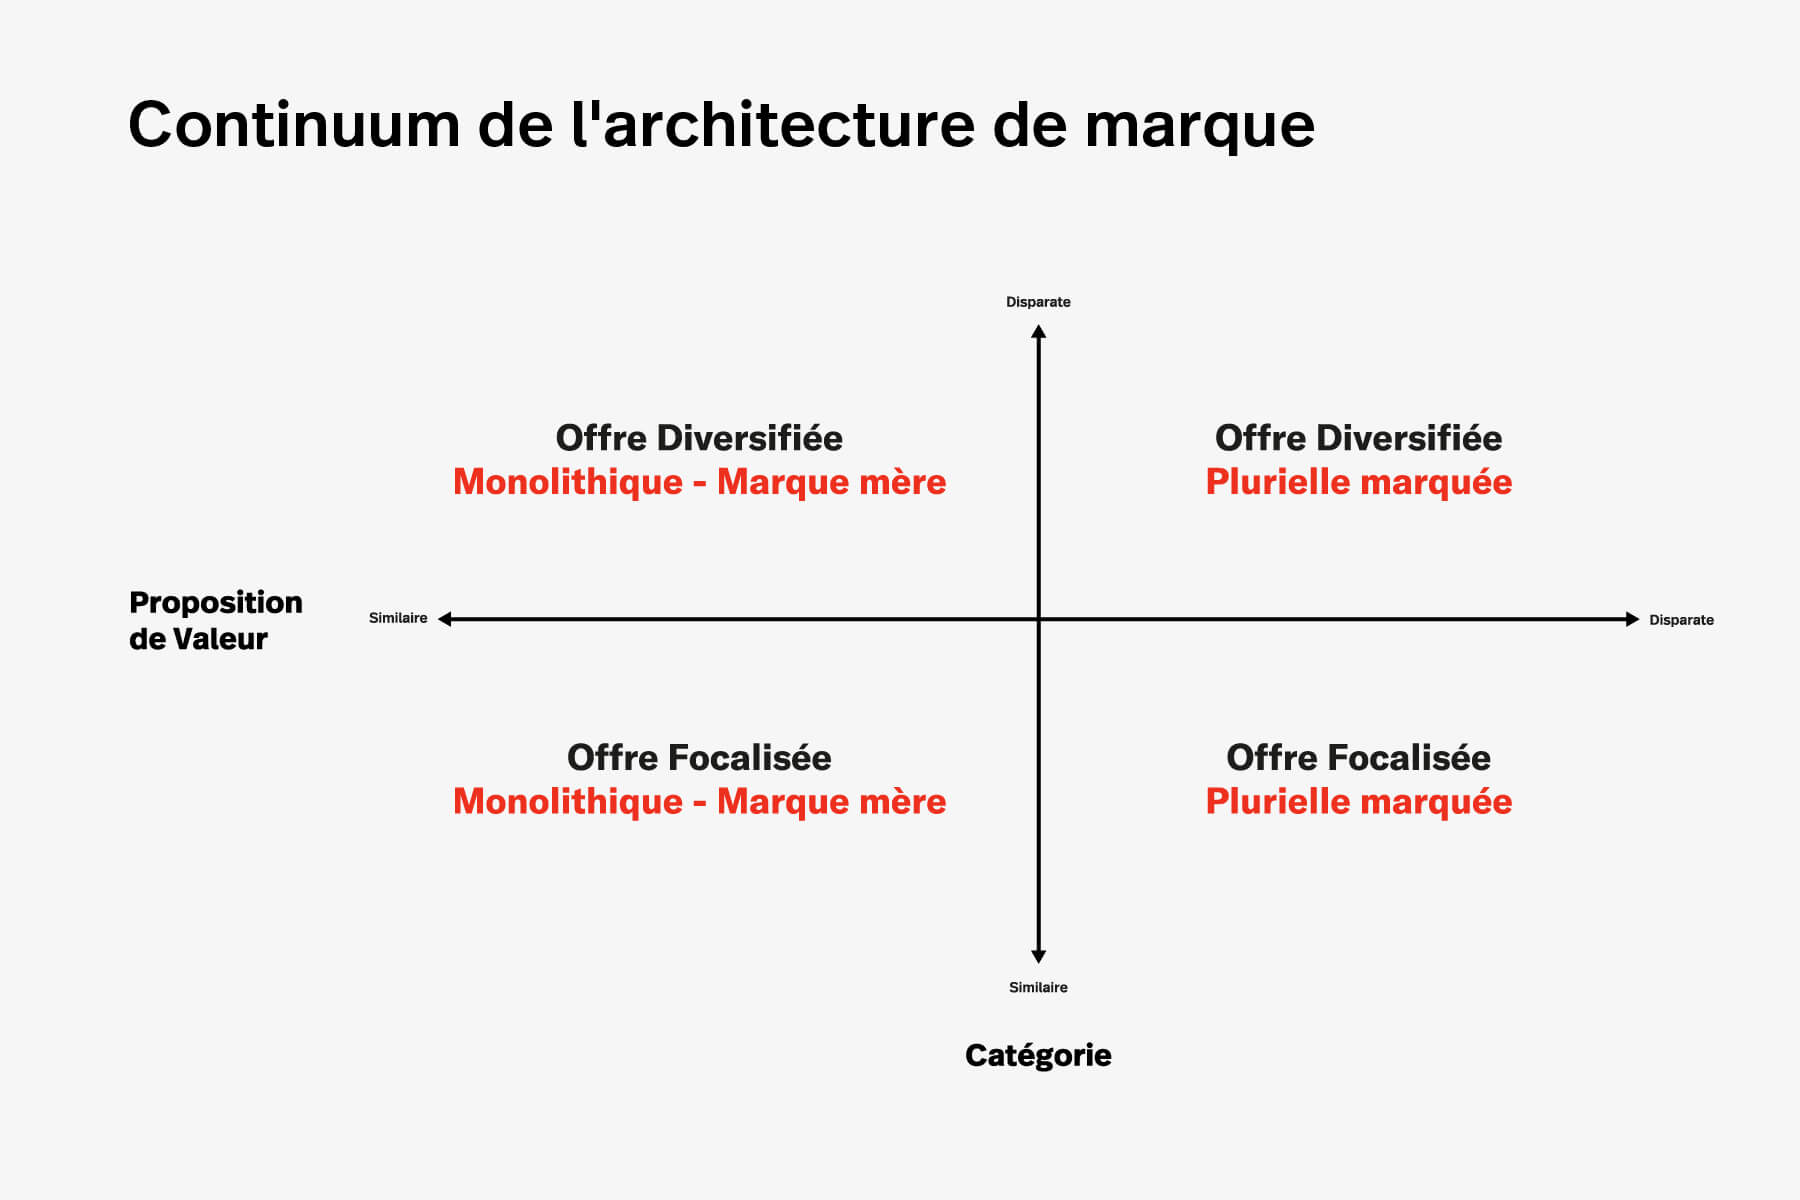 Architecture-marque-continuum-2.jpg